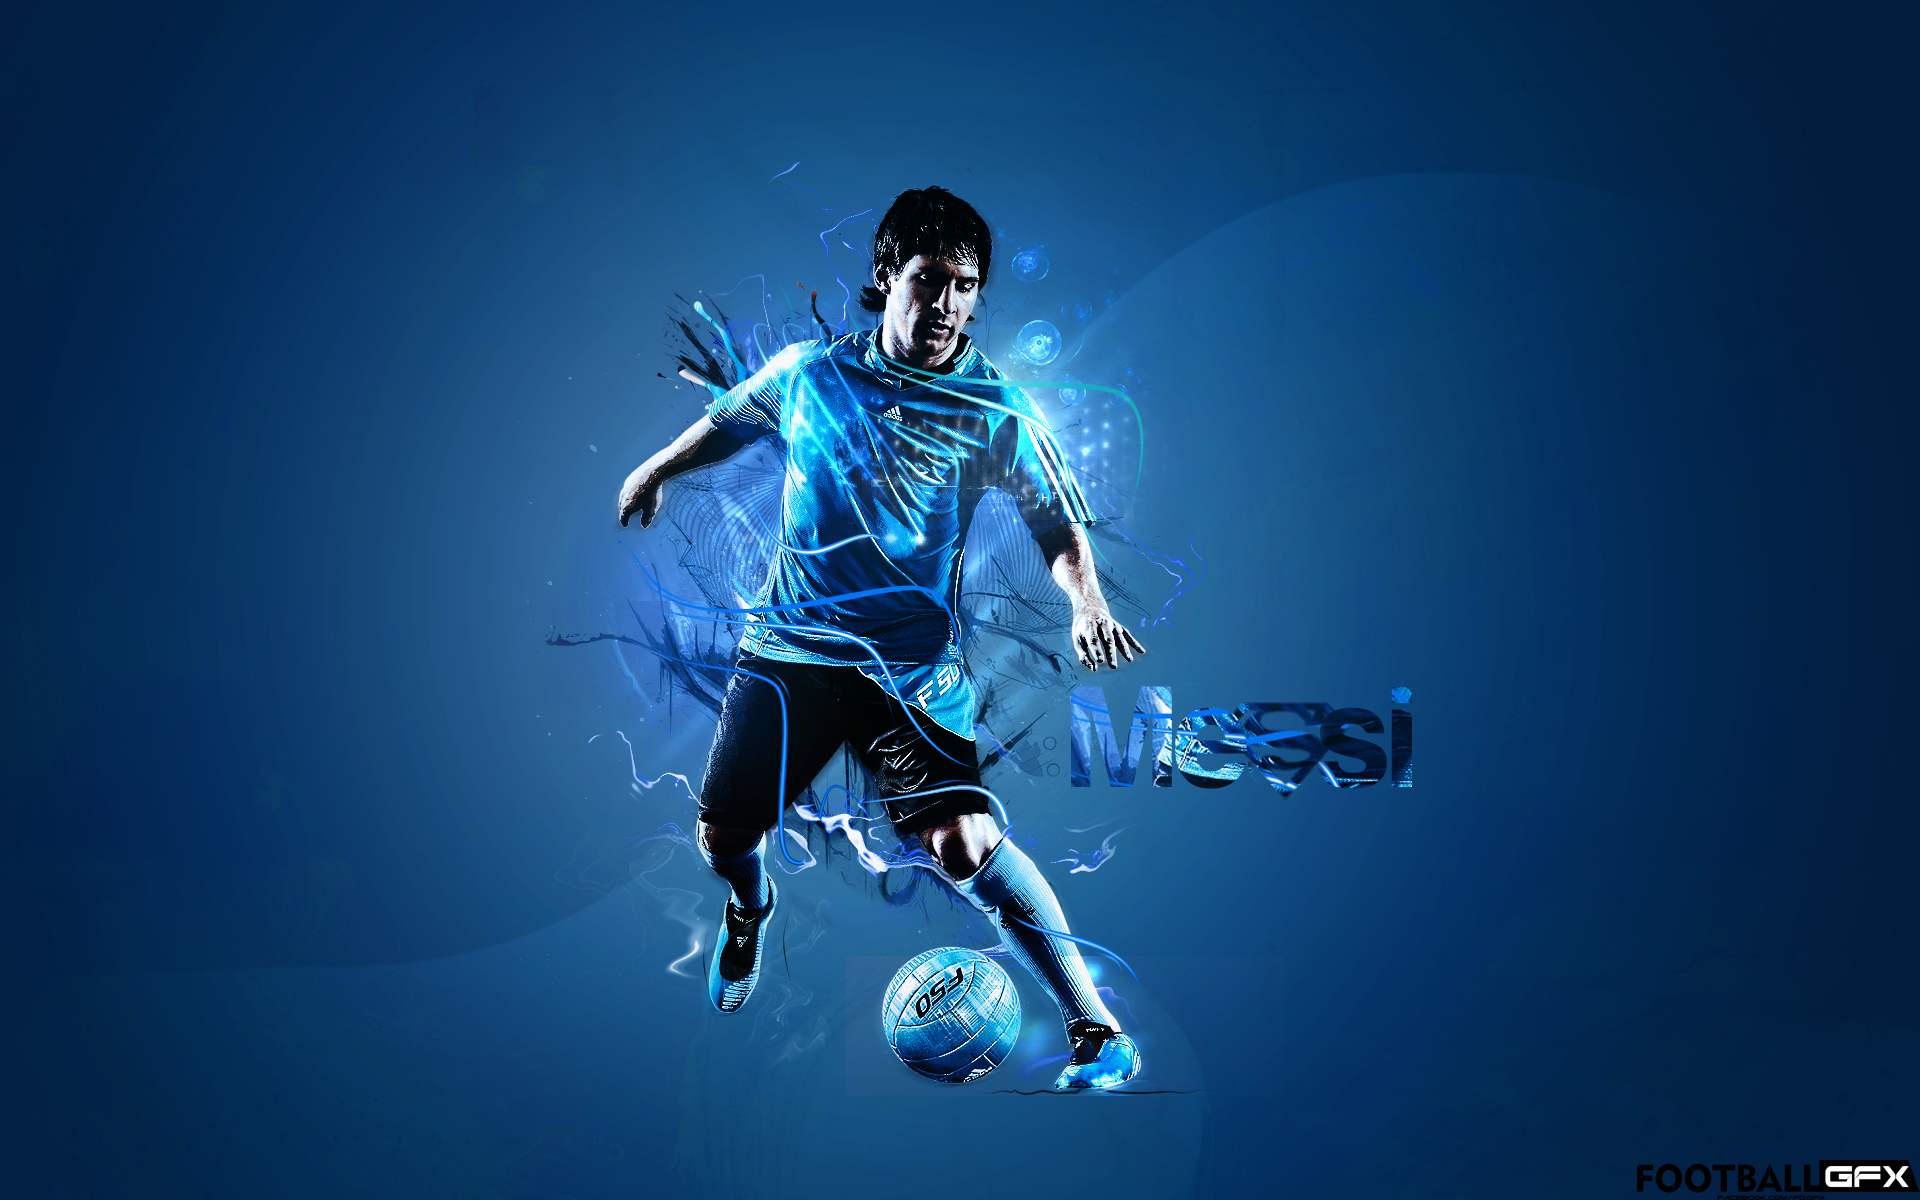 Lionel Messi Adidas By Nisizenuni